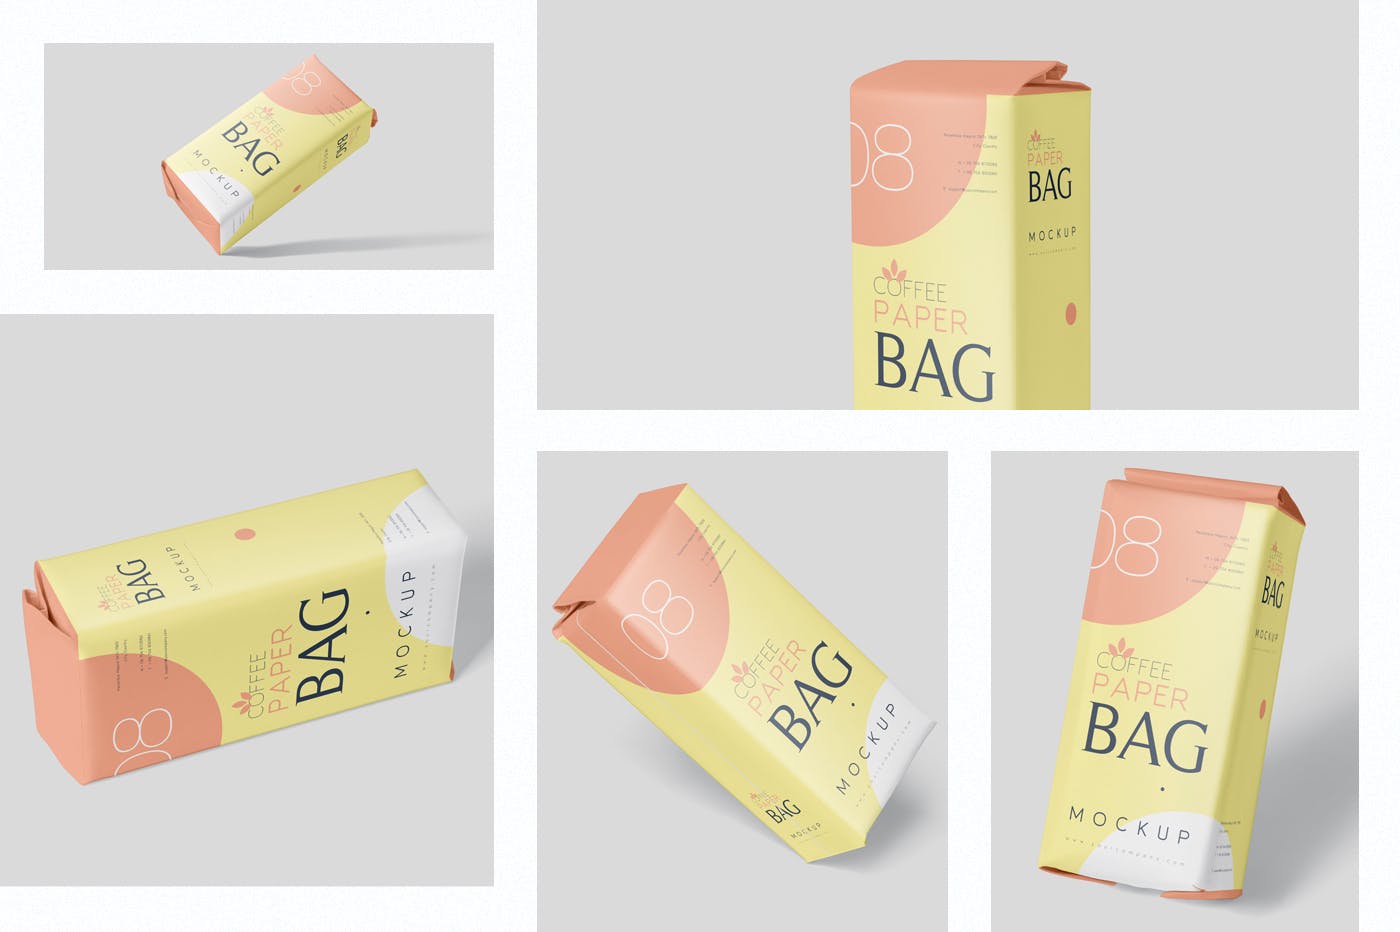 咖啡粉/咖啡豆纸袋包装16图库精选模板 Coffee Paper Bag Mockup Set插图(1)